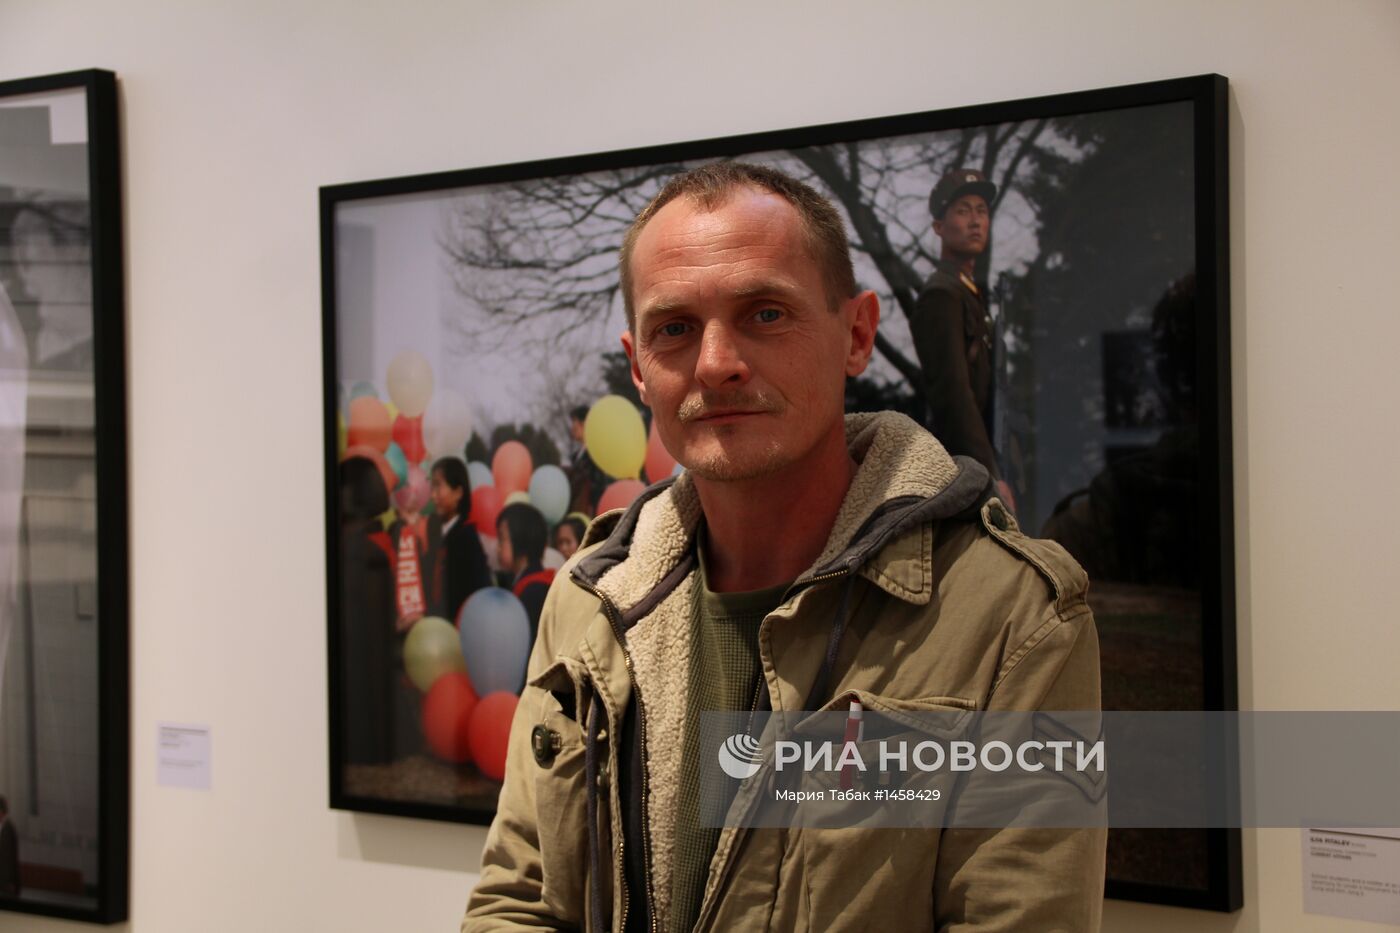 Фотограф И.Питалев удостоен премии Sony World Photography Awards